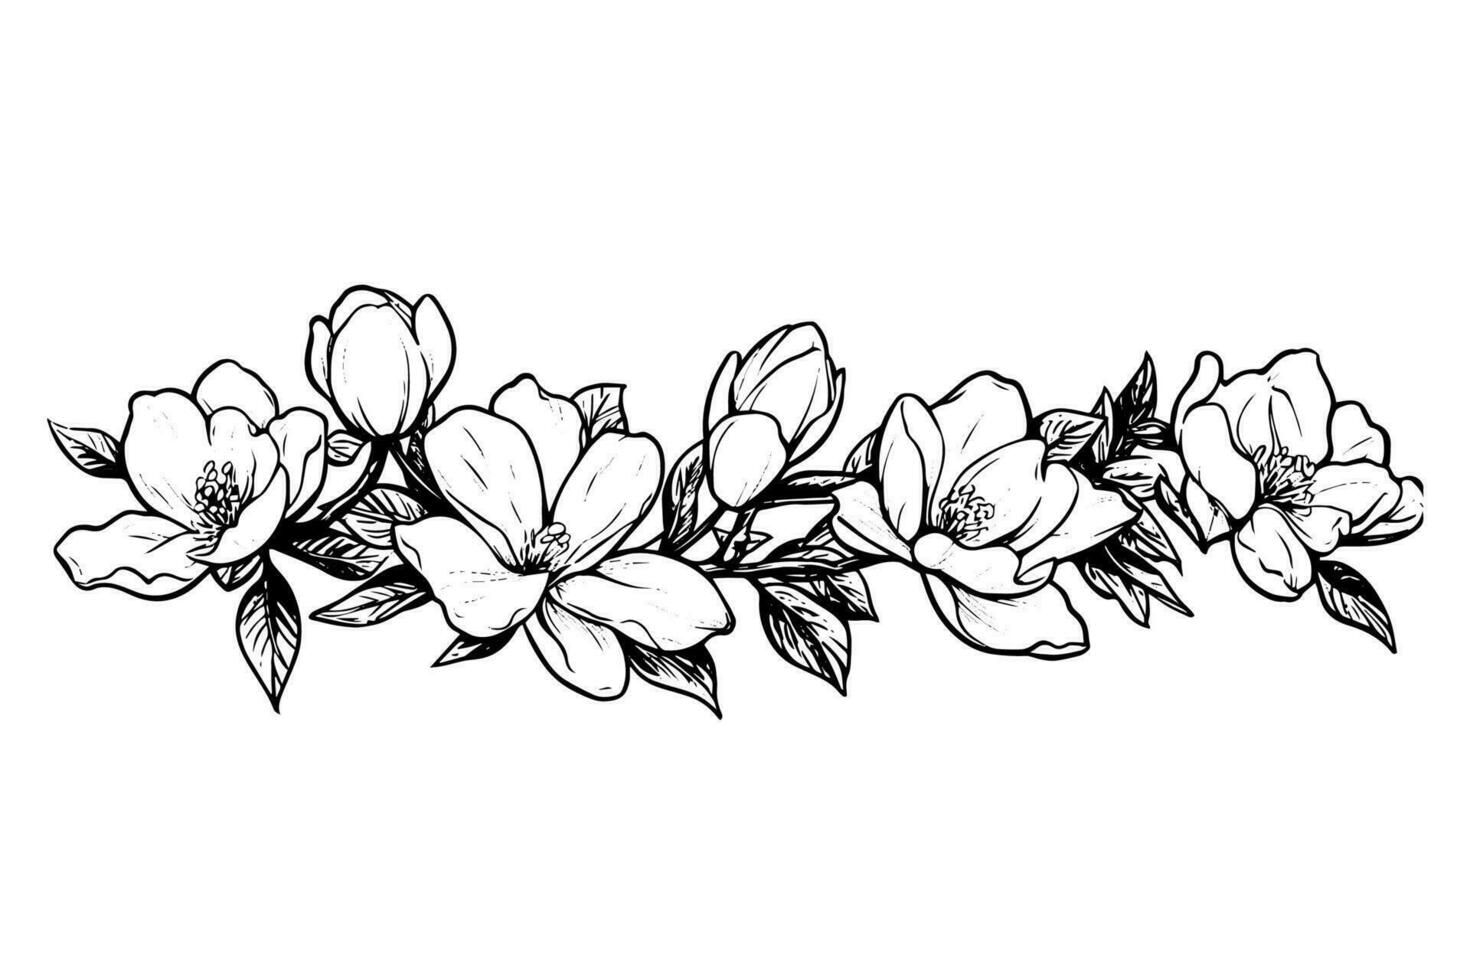 mano disegnato magnolia fiore inchiostro schizzo. incisione stile vettore illustrazione.